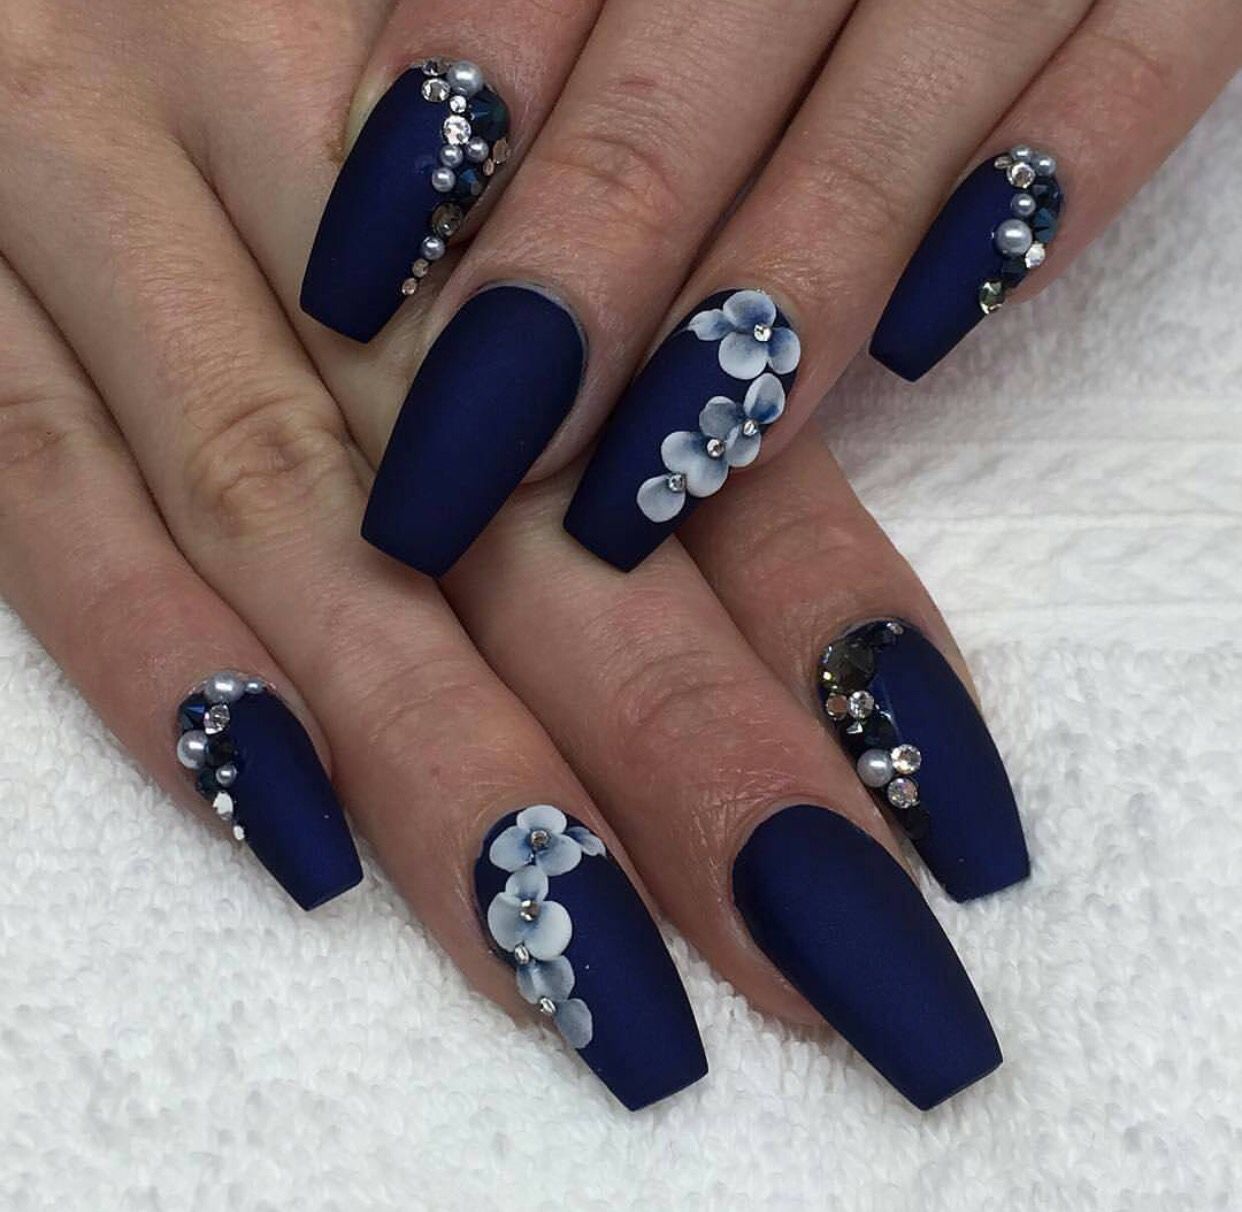 14 Diseños de uñas azul marino que no te harán lucir aburrida